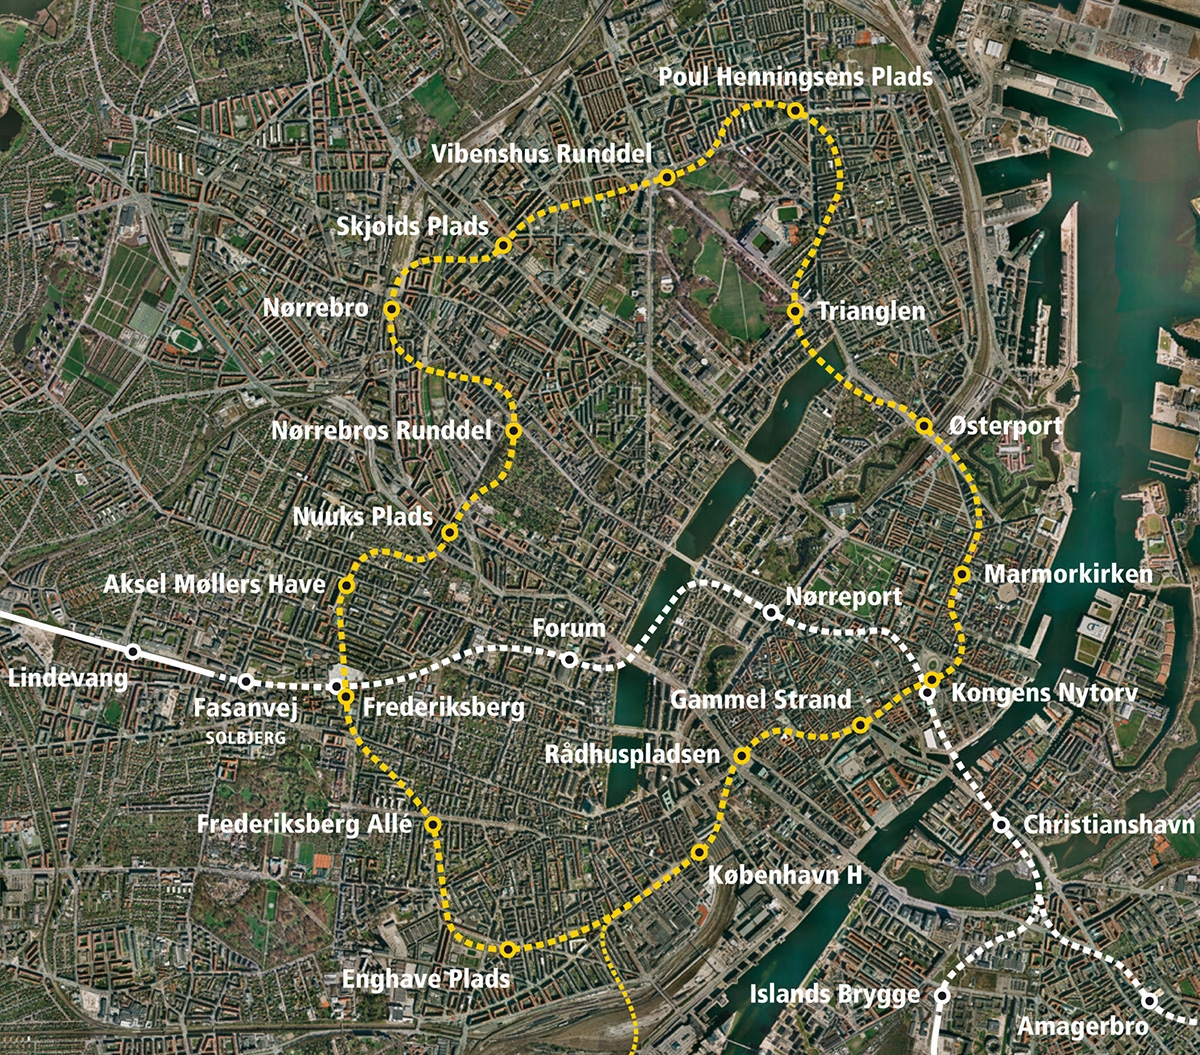  シティリンゲンの路線図。旧市街地などコペンハーゲンの主要な居住区をつなぐ（資料：Arup）